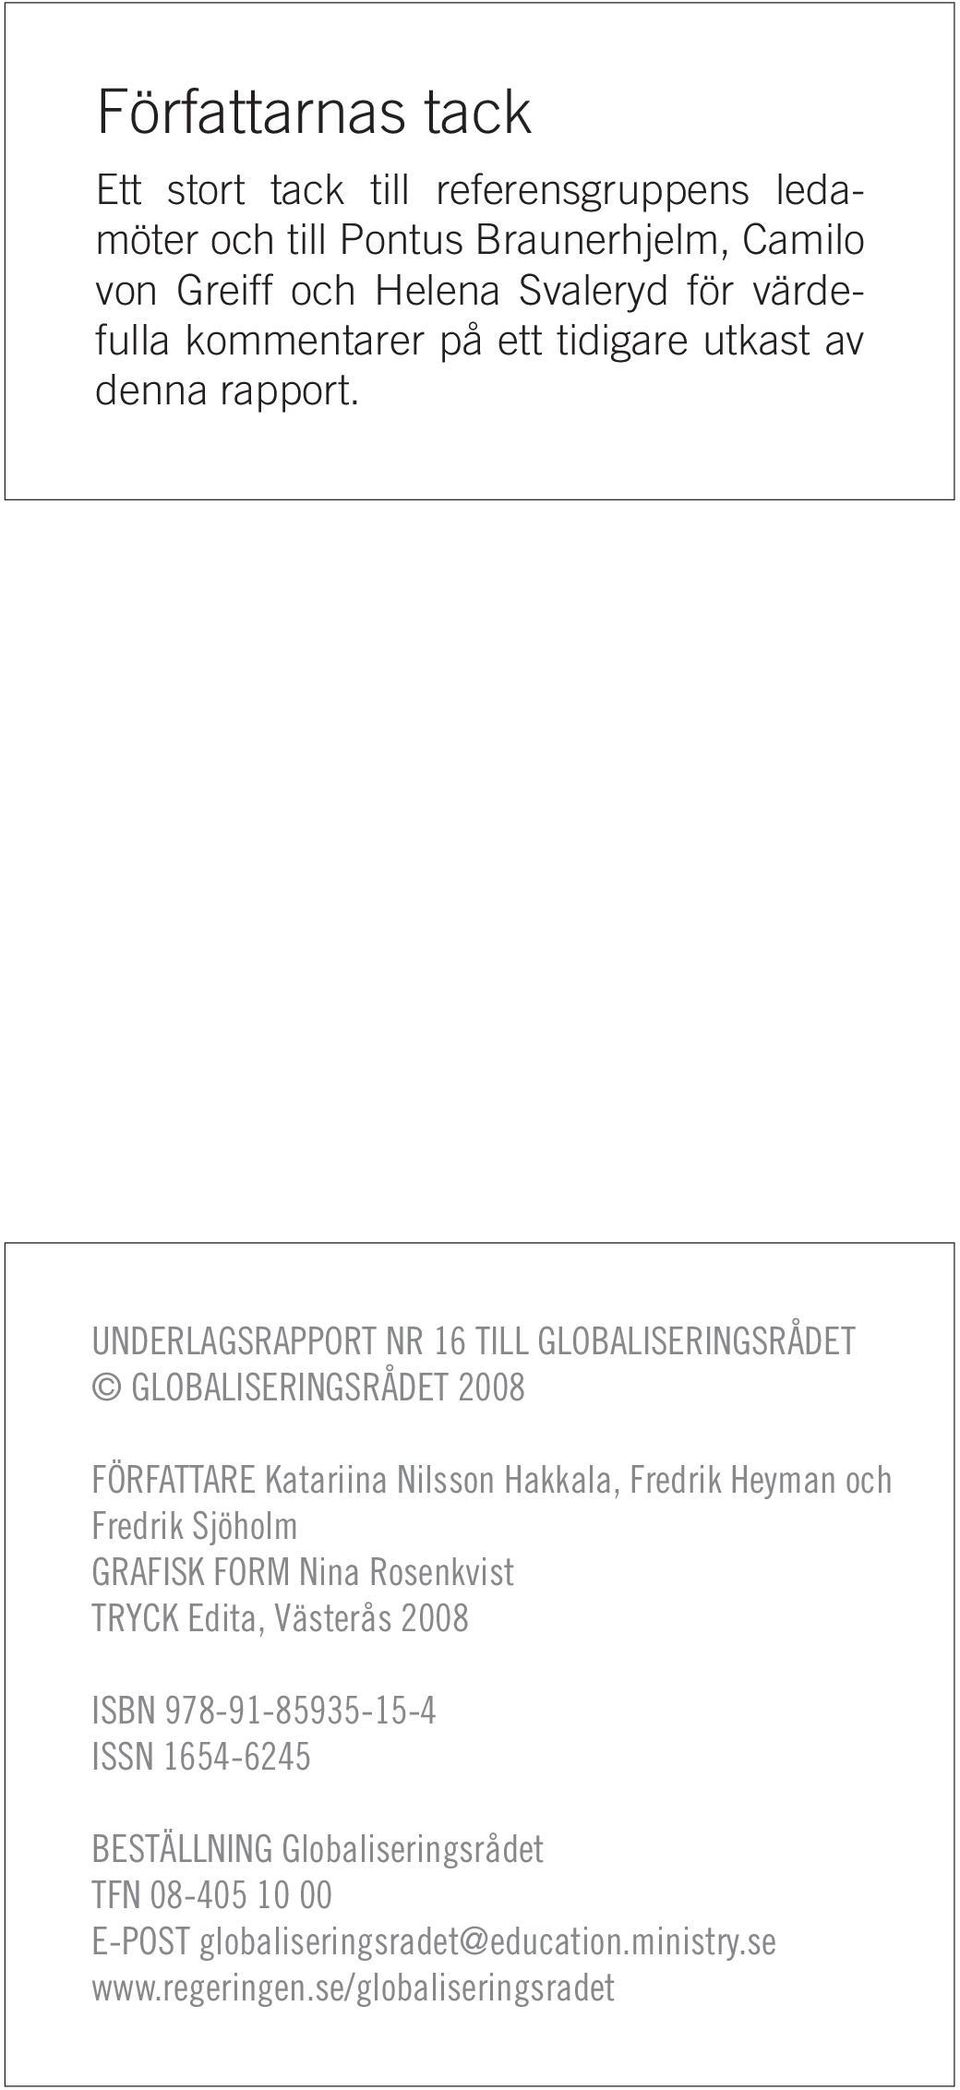 UNDERLAGSRAPPORT NR 16 TILL GLOBALISERINGSRÅDET GLOBALISERINGSRÅDET 2008 FÖRFATTARE Katariina Nilsson Hakkala, Fredrik Heyman och Fredrik